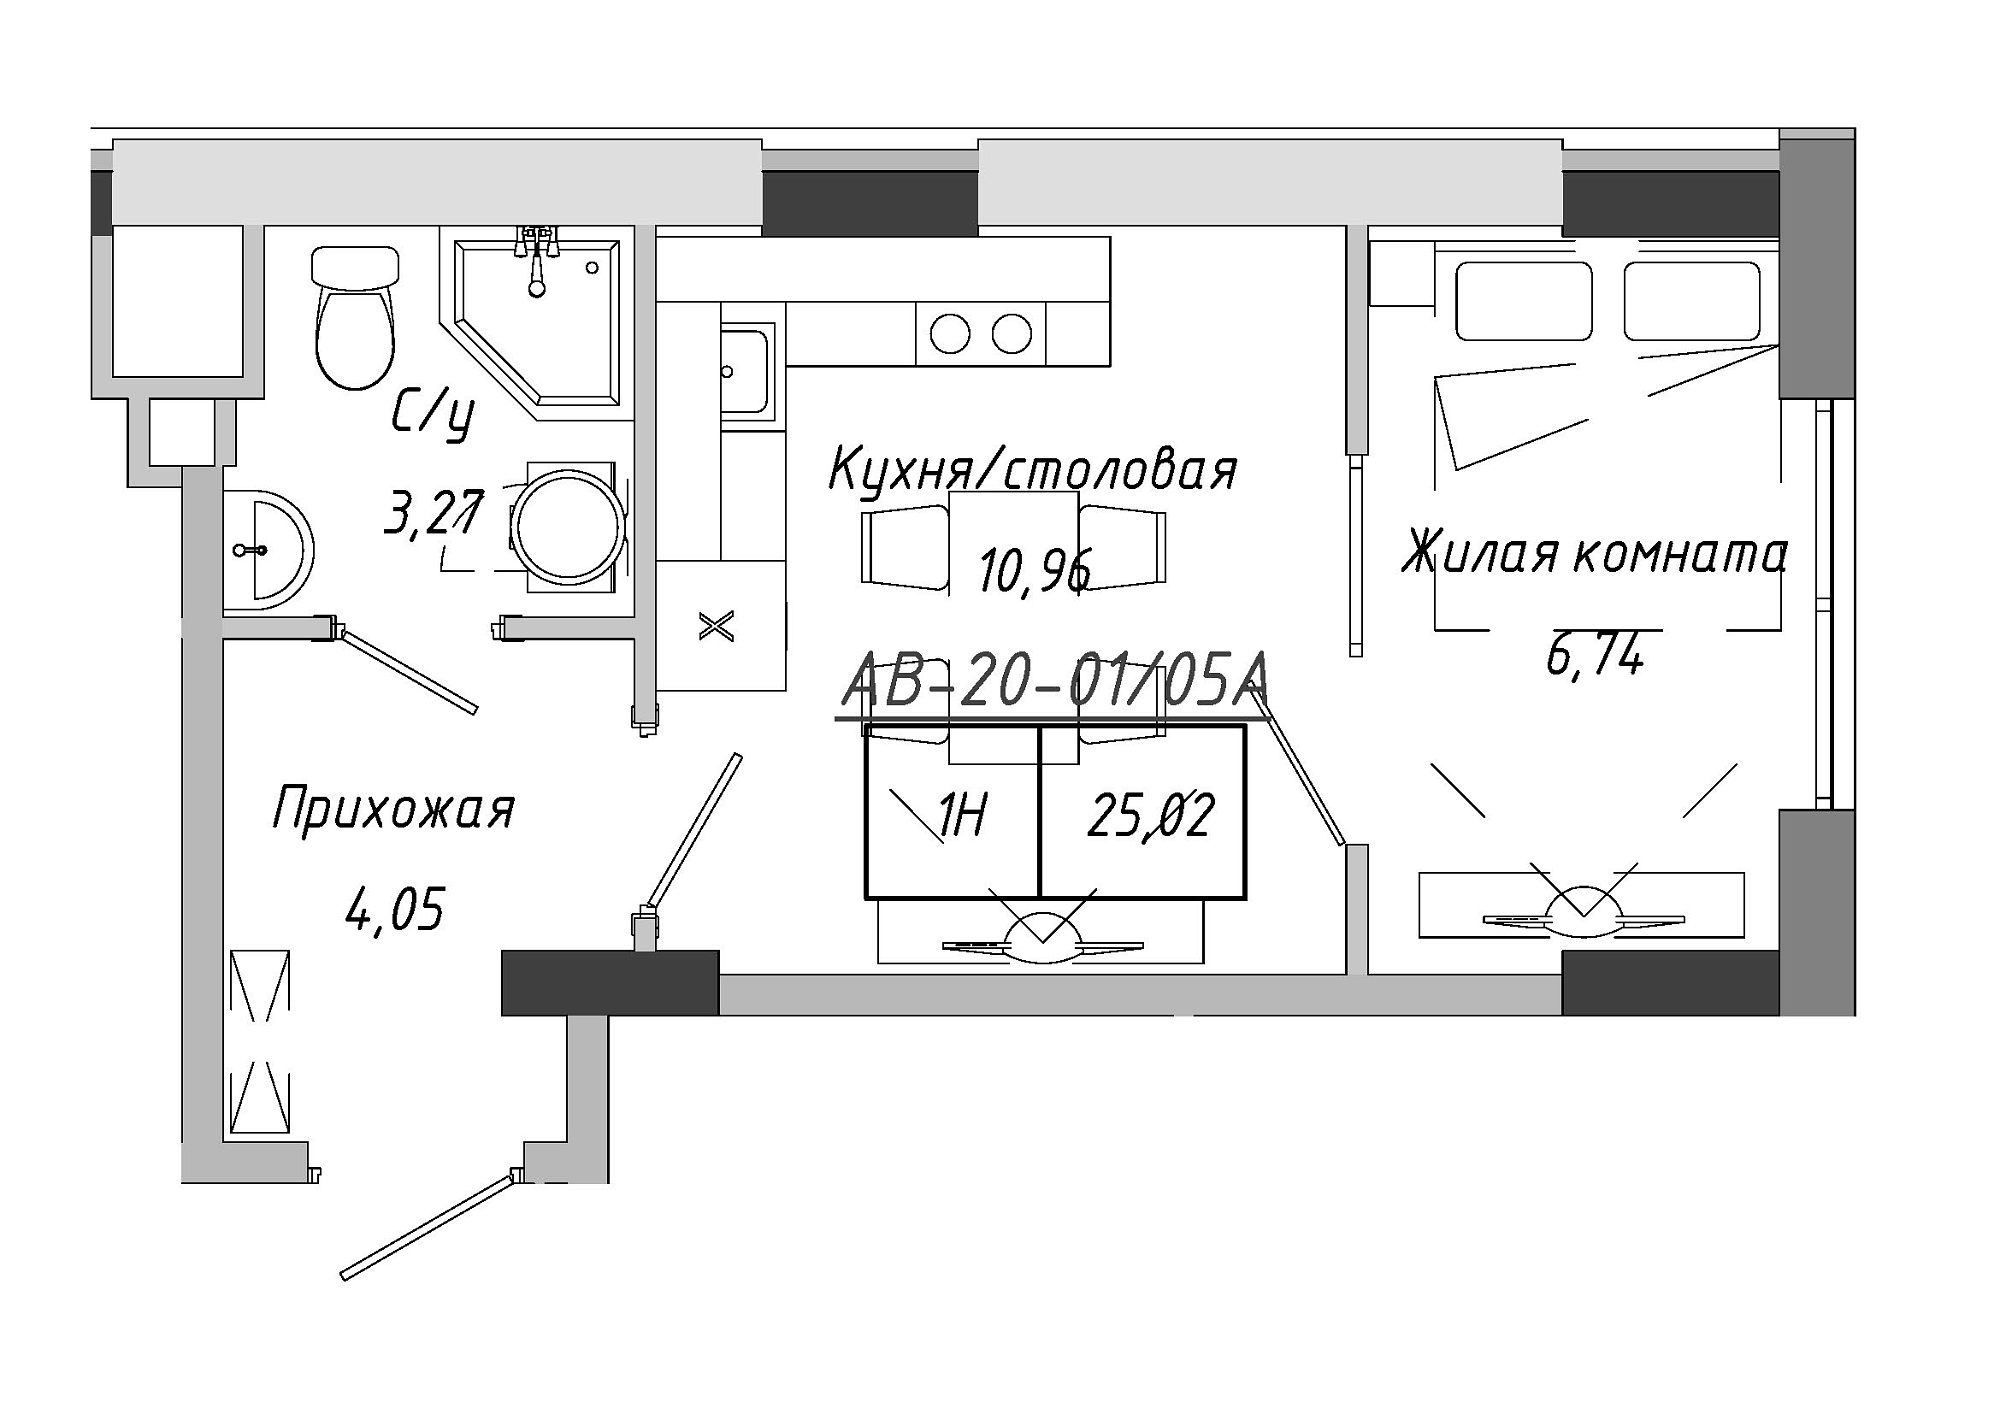 Планування 1-к квартира площею 25.02м2, AB-20-01/0005а.